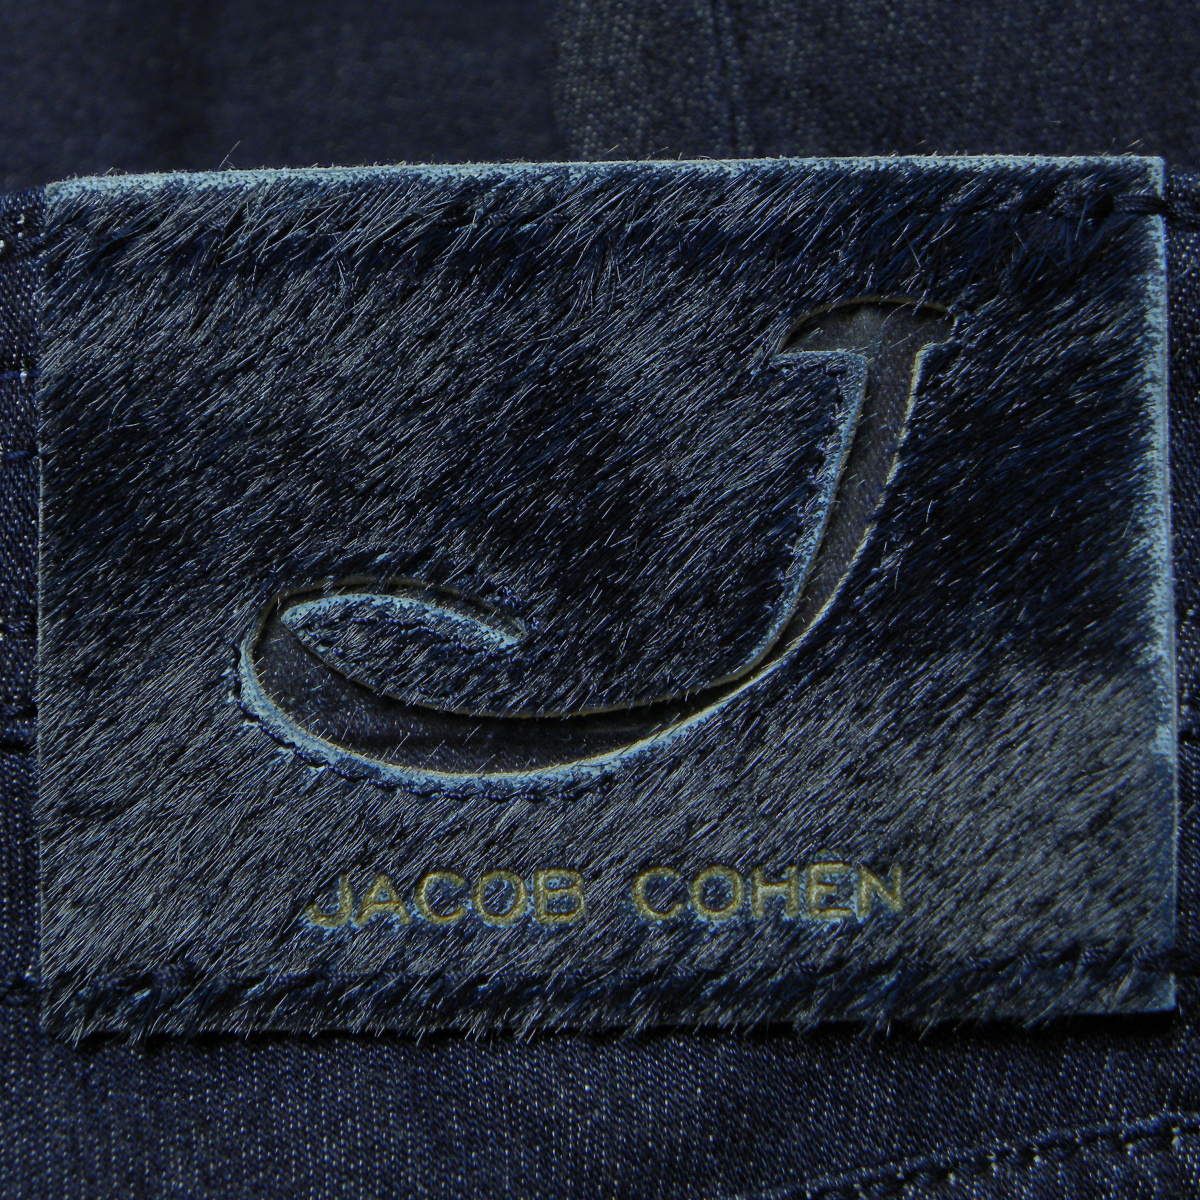 JACOB COHEN STYLE 622 W31 スウェットデニムパンツ ストレッチジーンズ 濃紺 ヤコブコーエン OT:X0511449W-56 M:J622 COMF-H_画像4